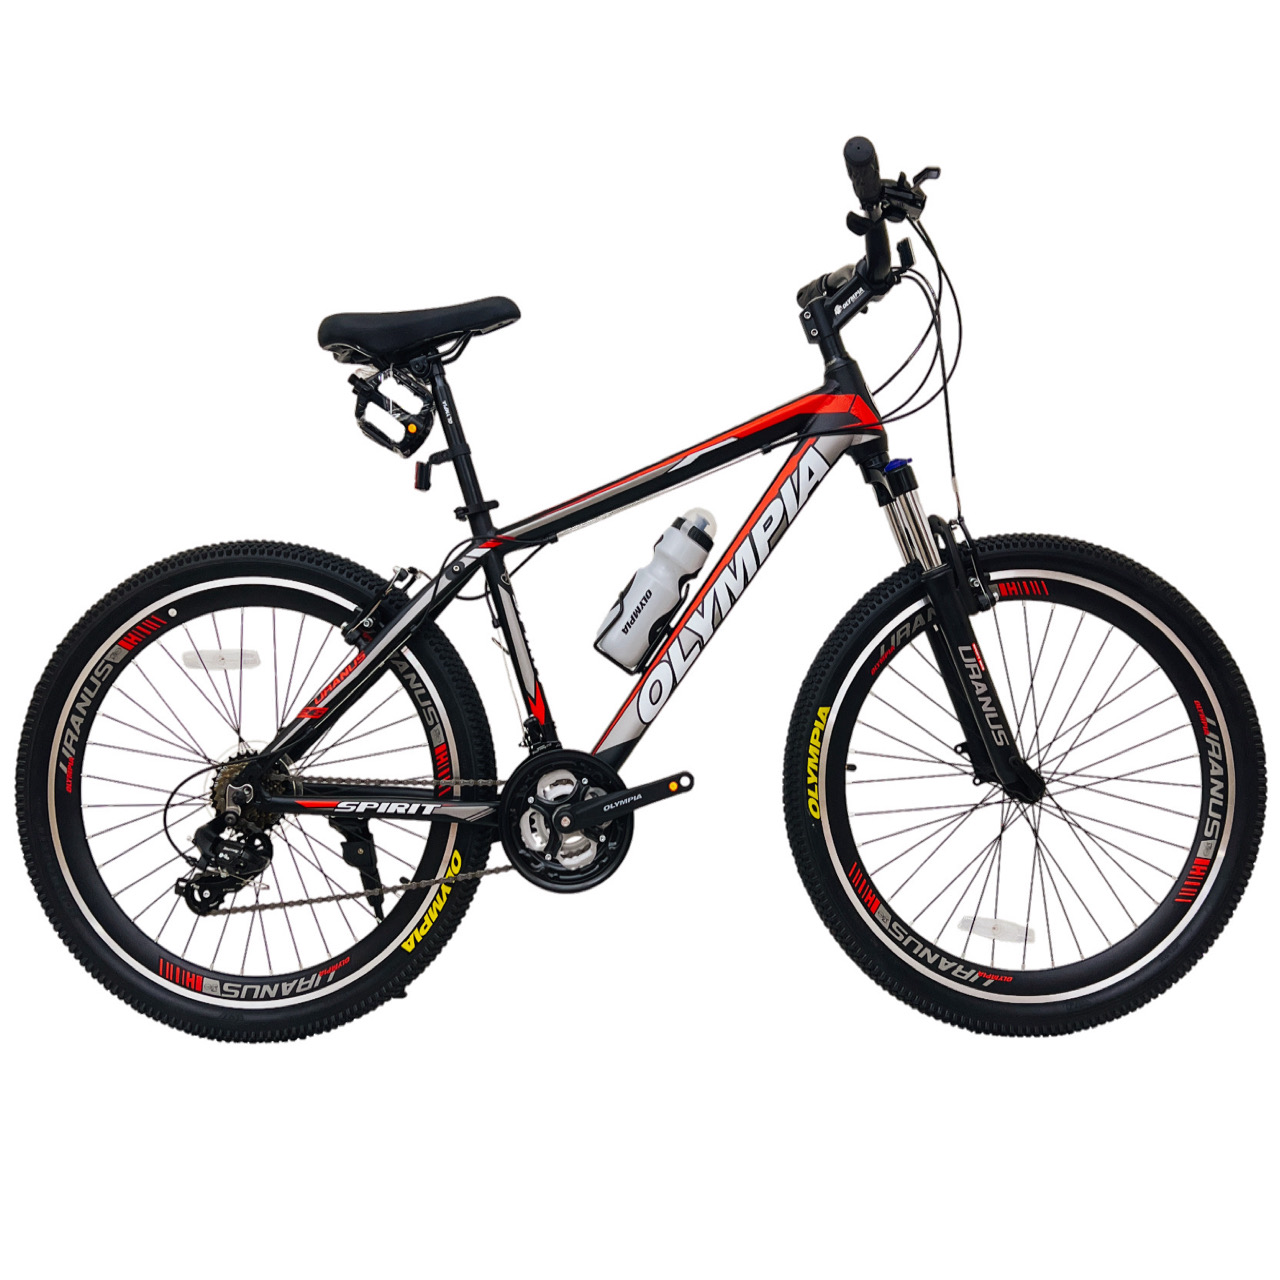 نکته خرید - قیمت روز دوچرخه کوهستان المپیا مدل SPIRIT کد 2 سایز طوقه 26 خرید